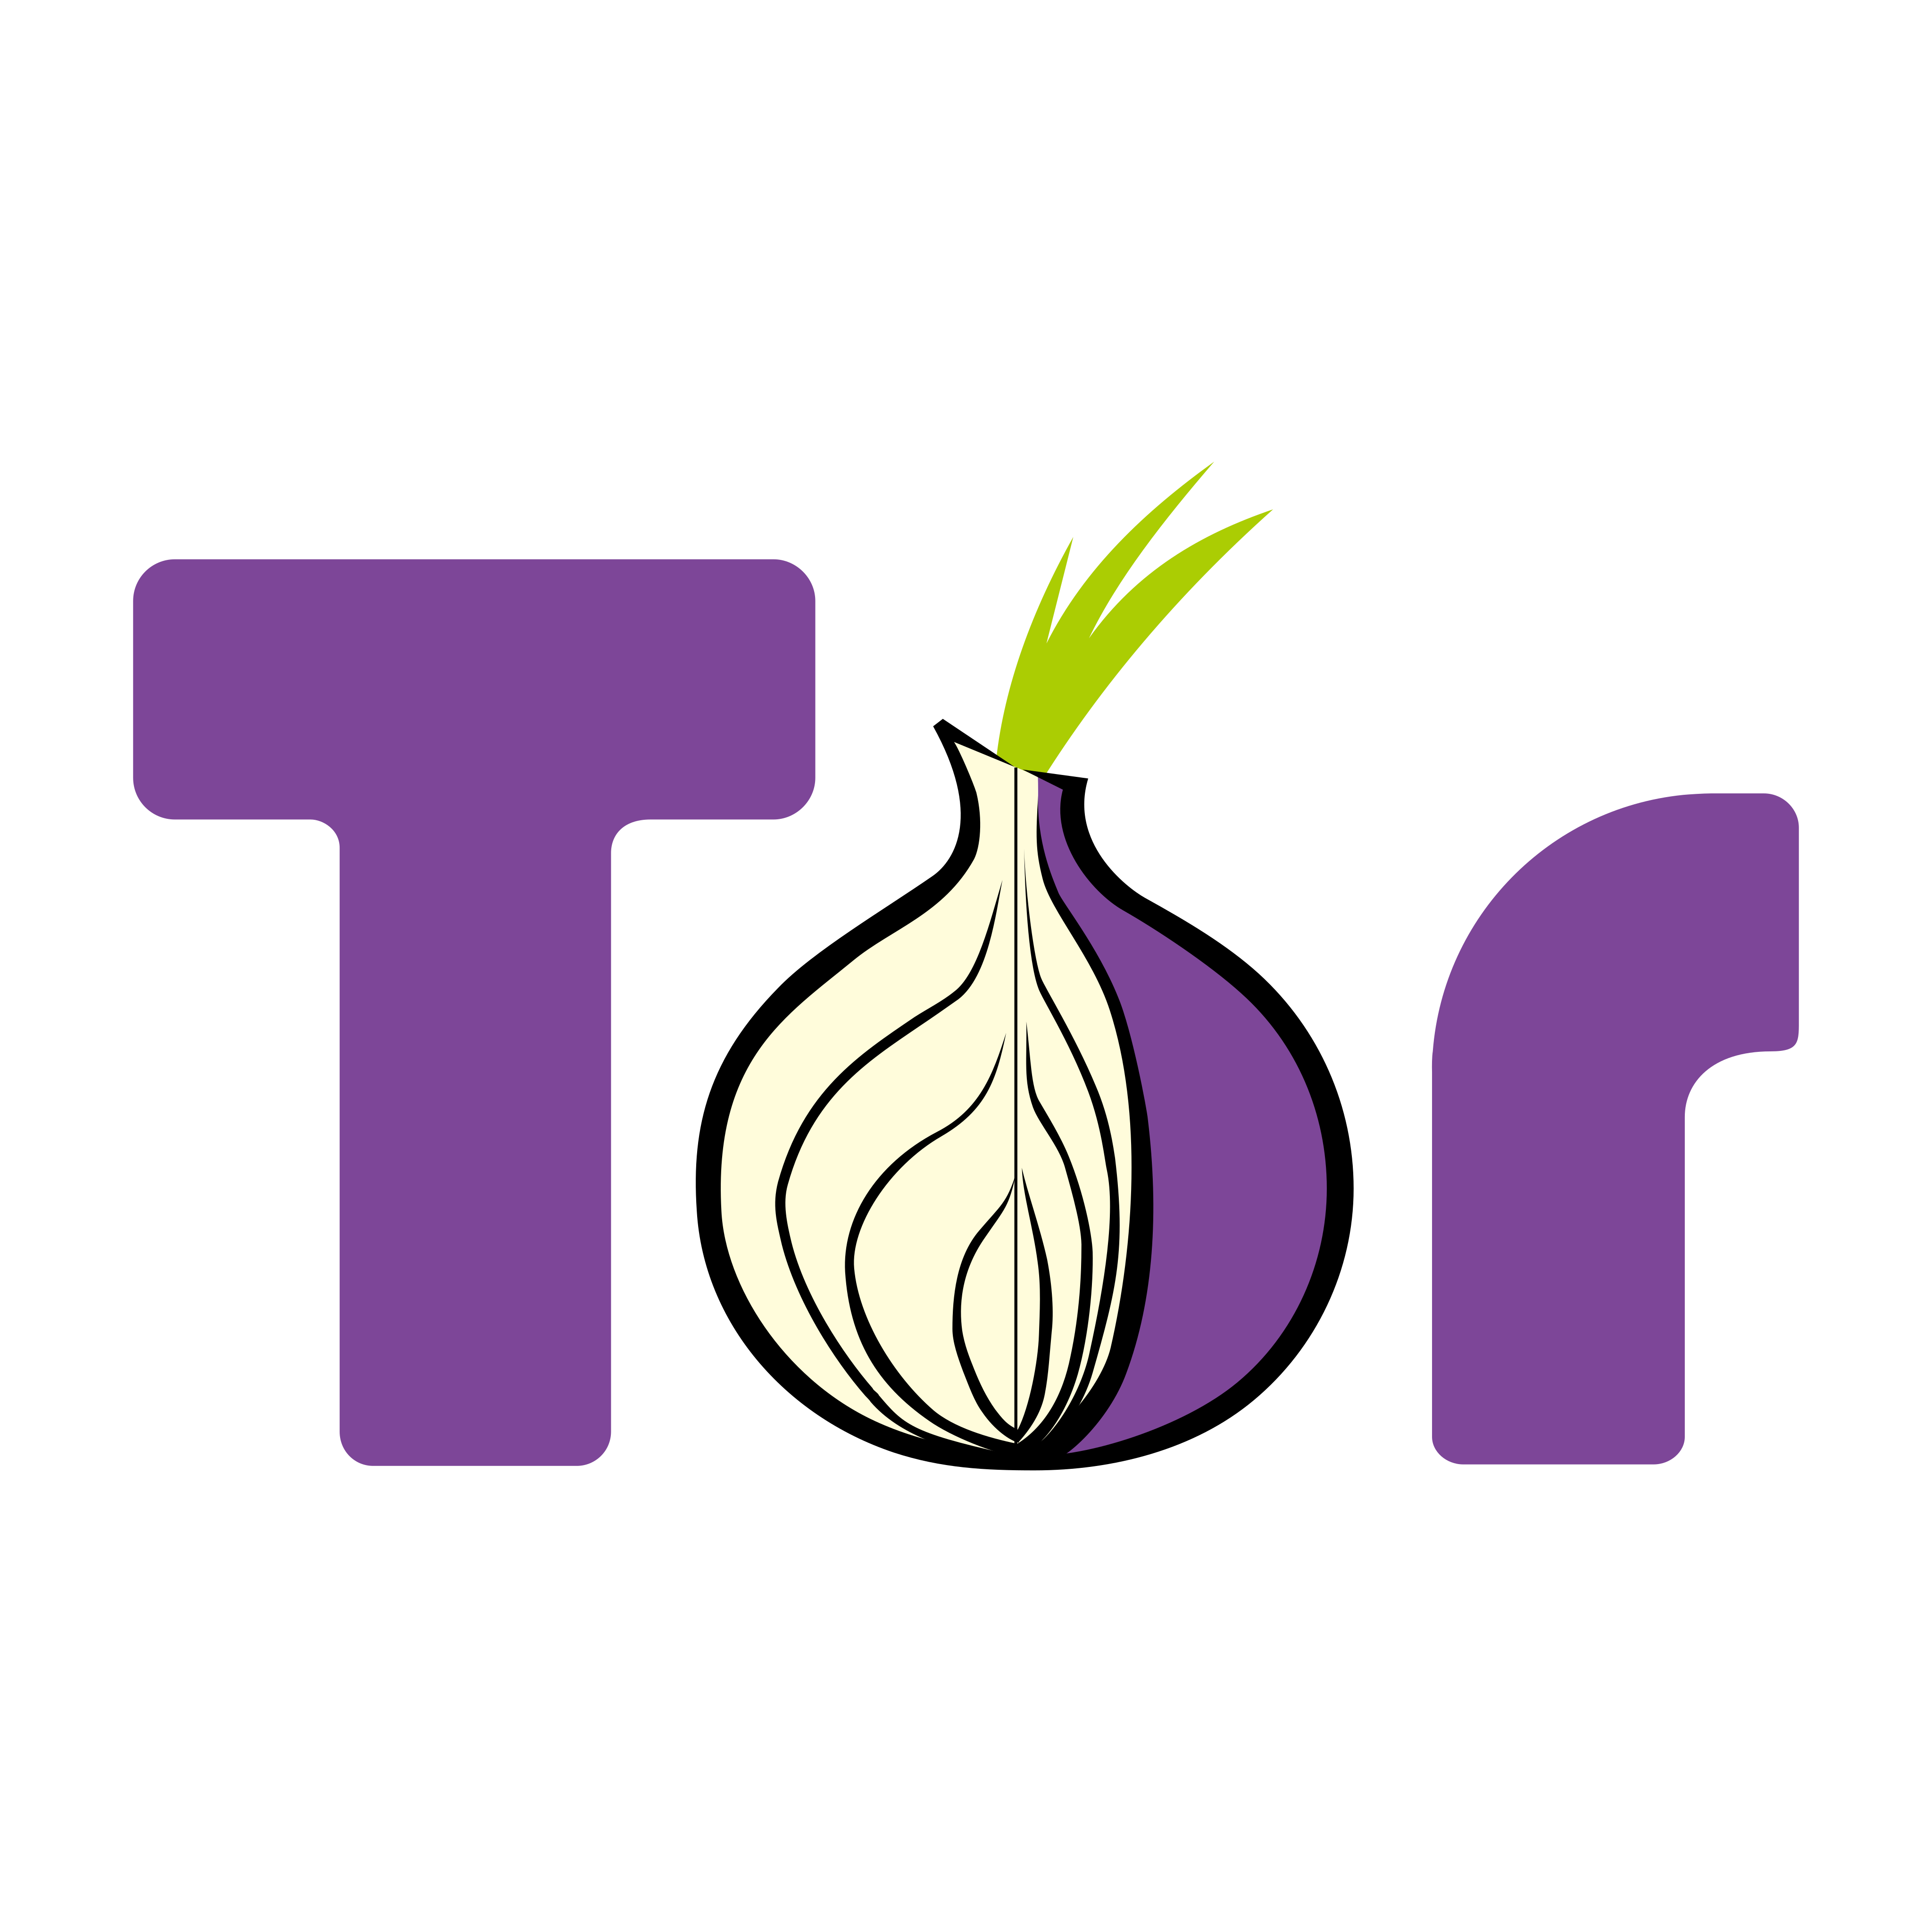 TOR Logo PNG.